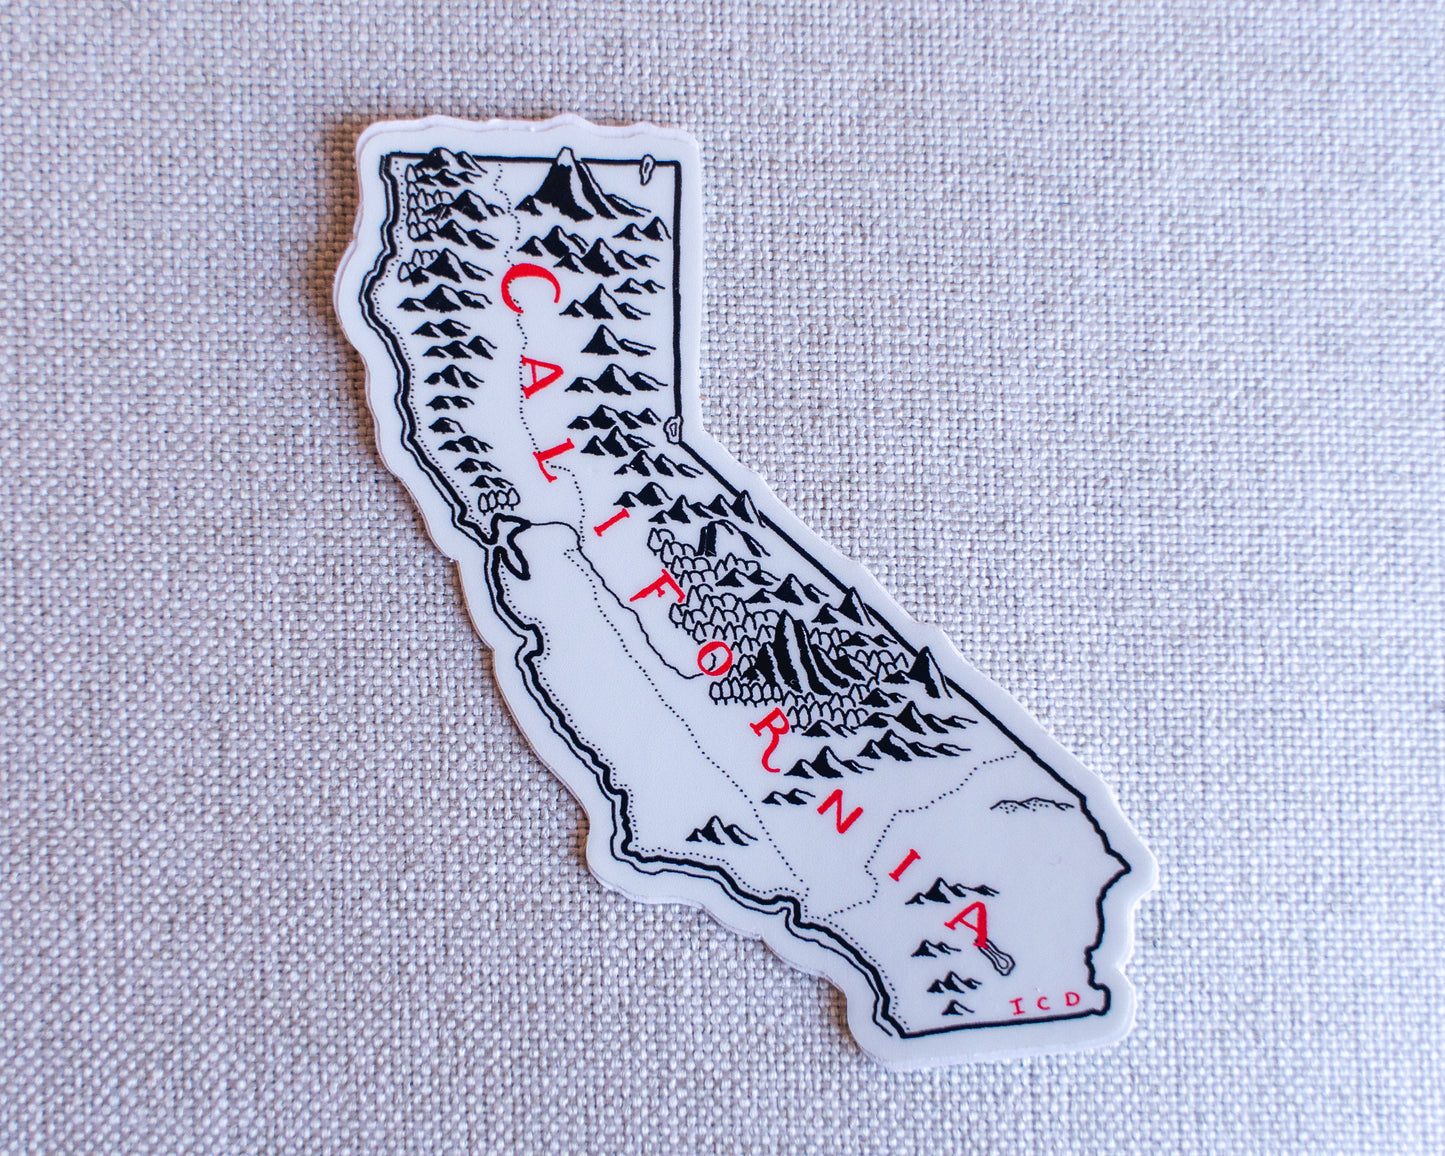 California Sticker Pack